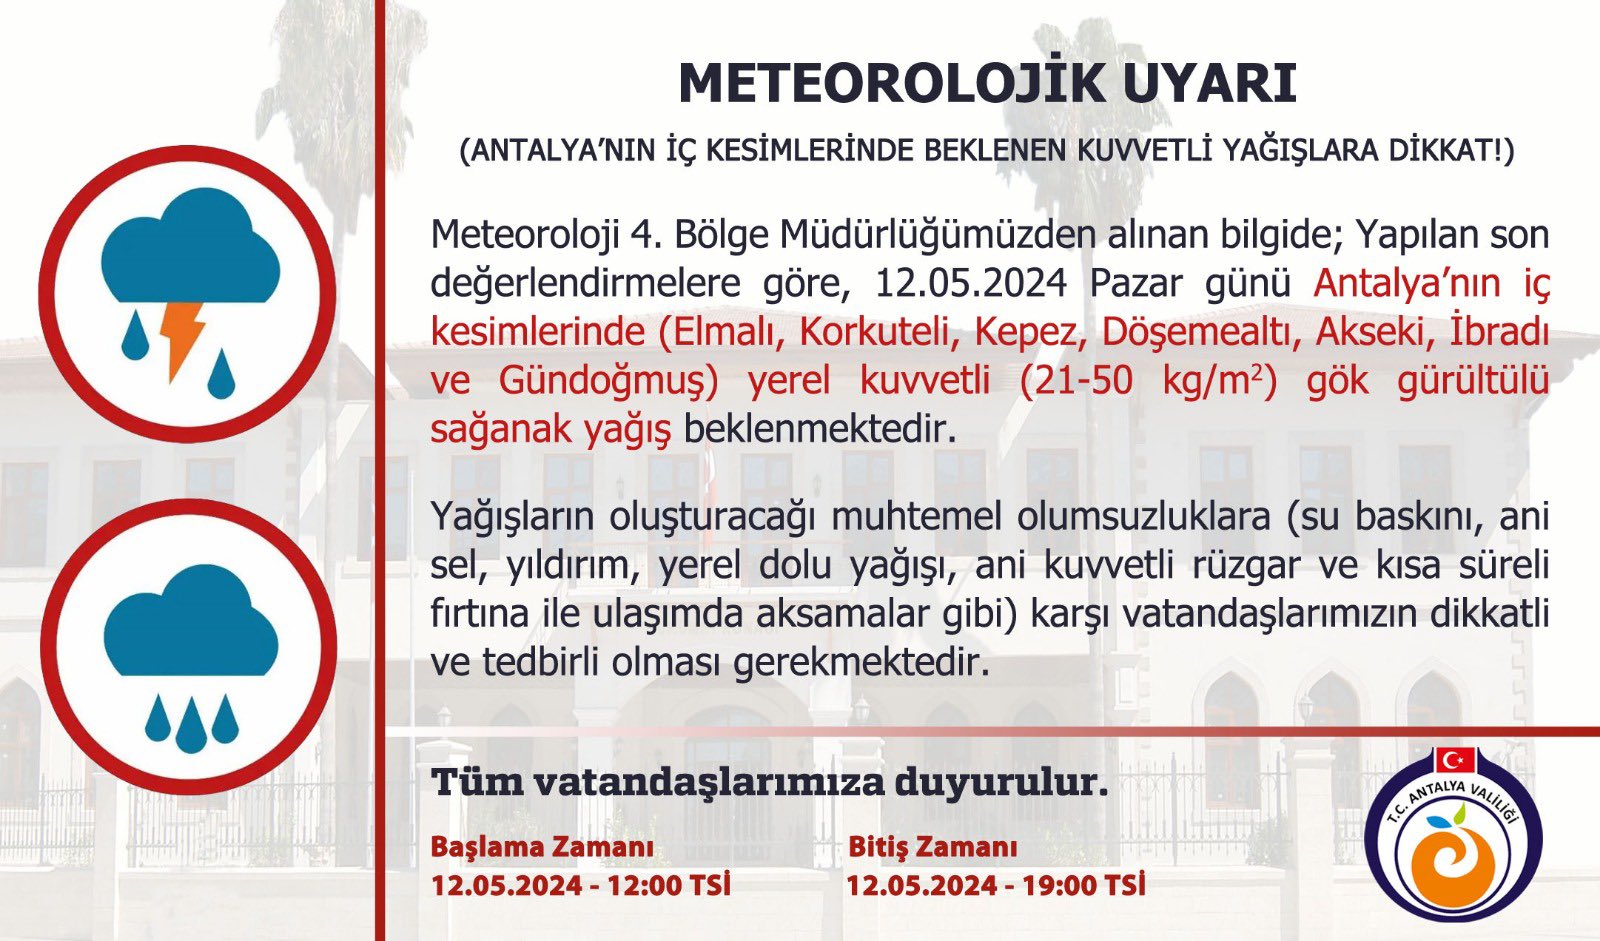 Meteoroloji uyardı: Antalya'nın iç kesimlerinde kuvvetli yağış 